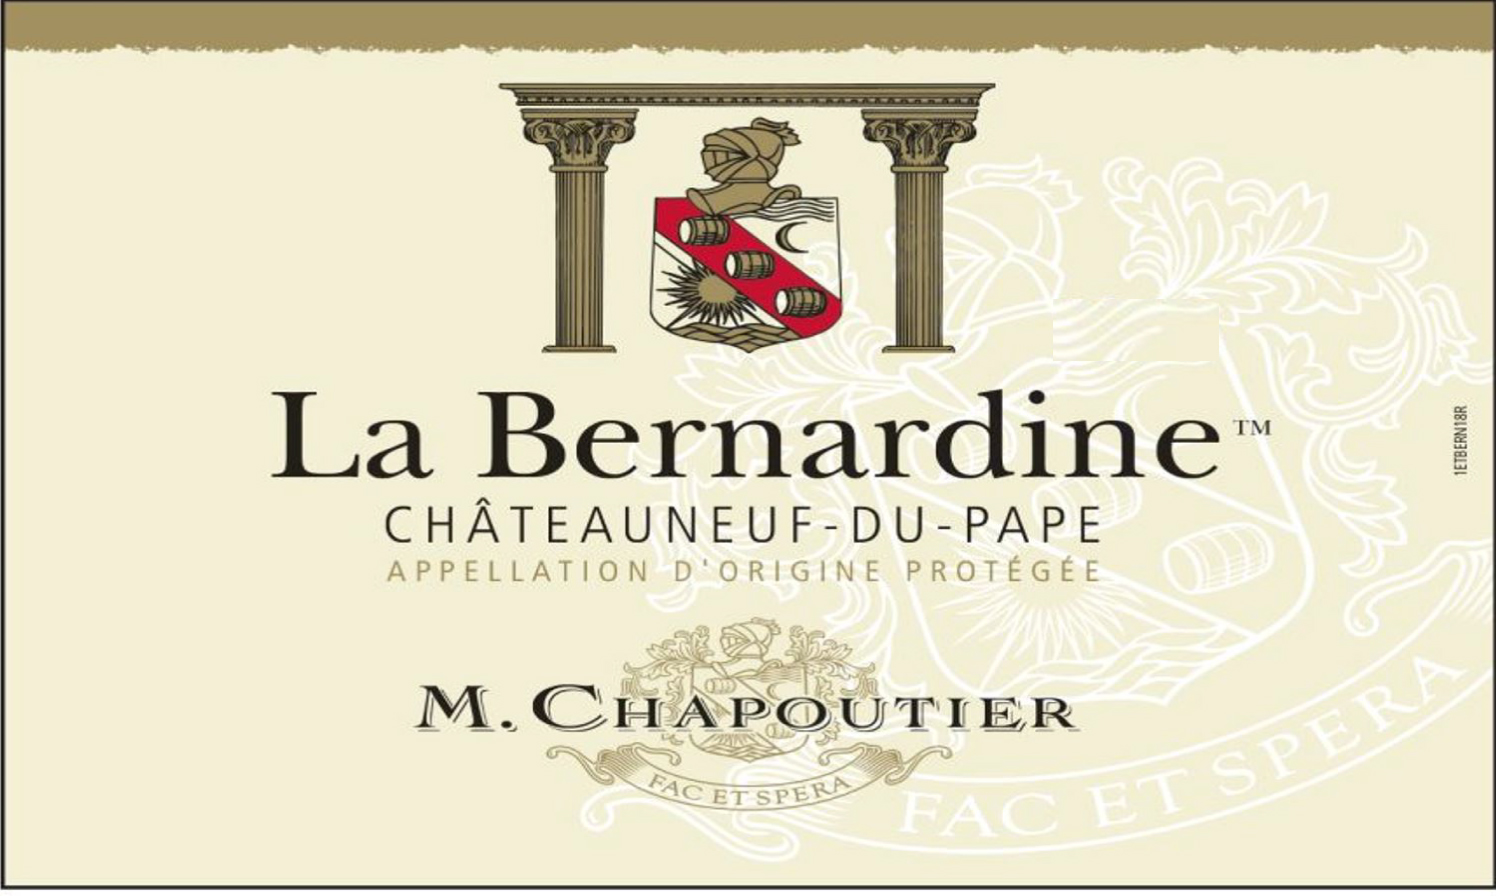 M. Chapoutier - Chateauneuf-du-Pape La Bernardine Rouge label